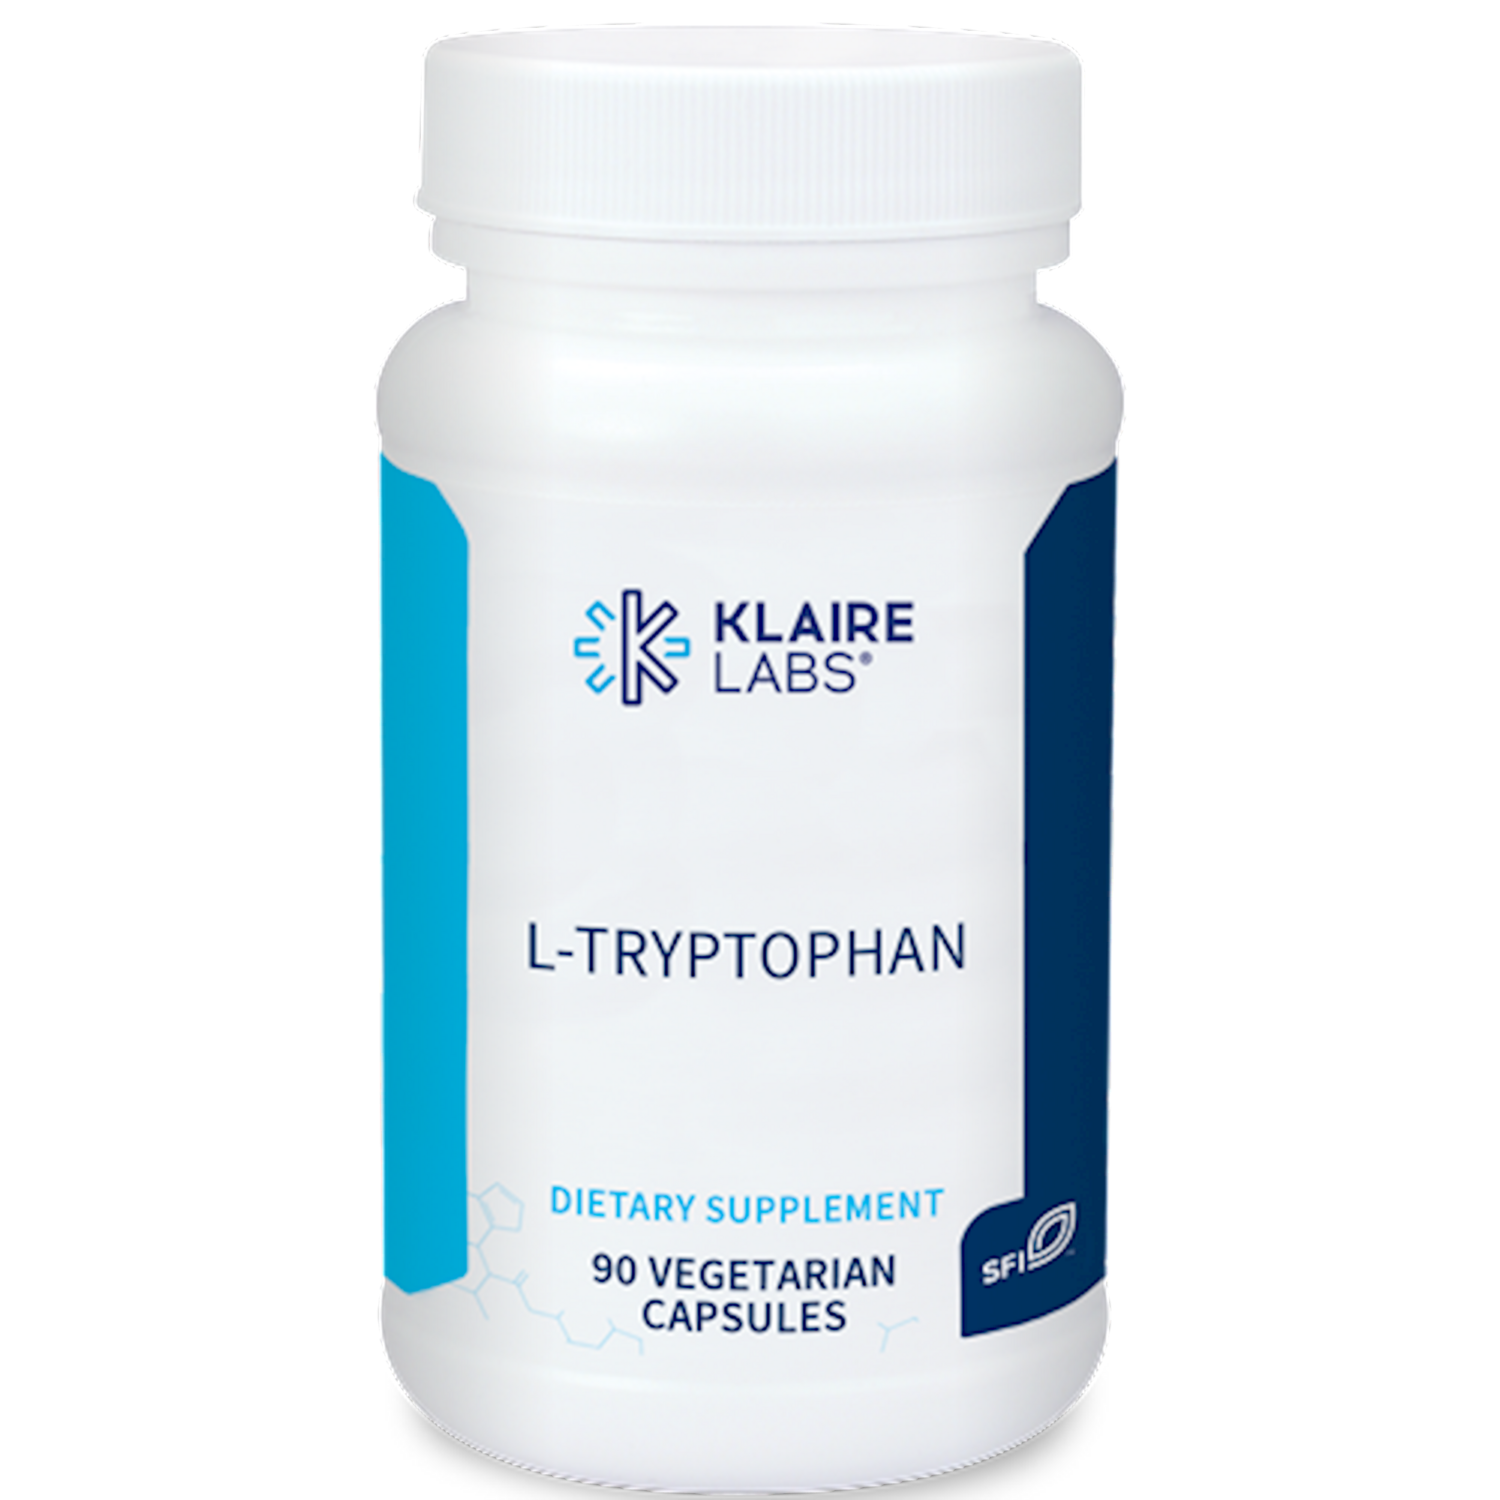 L-Tryptophan 90 vegcaps Klaire Labs